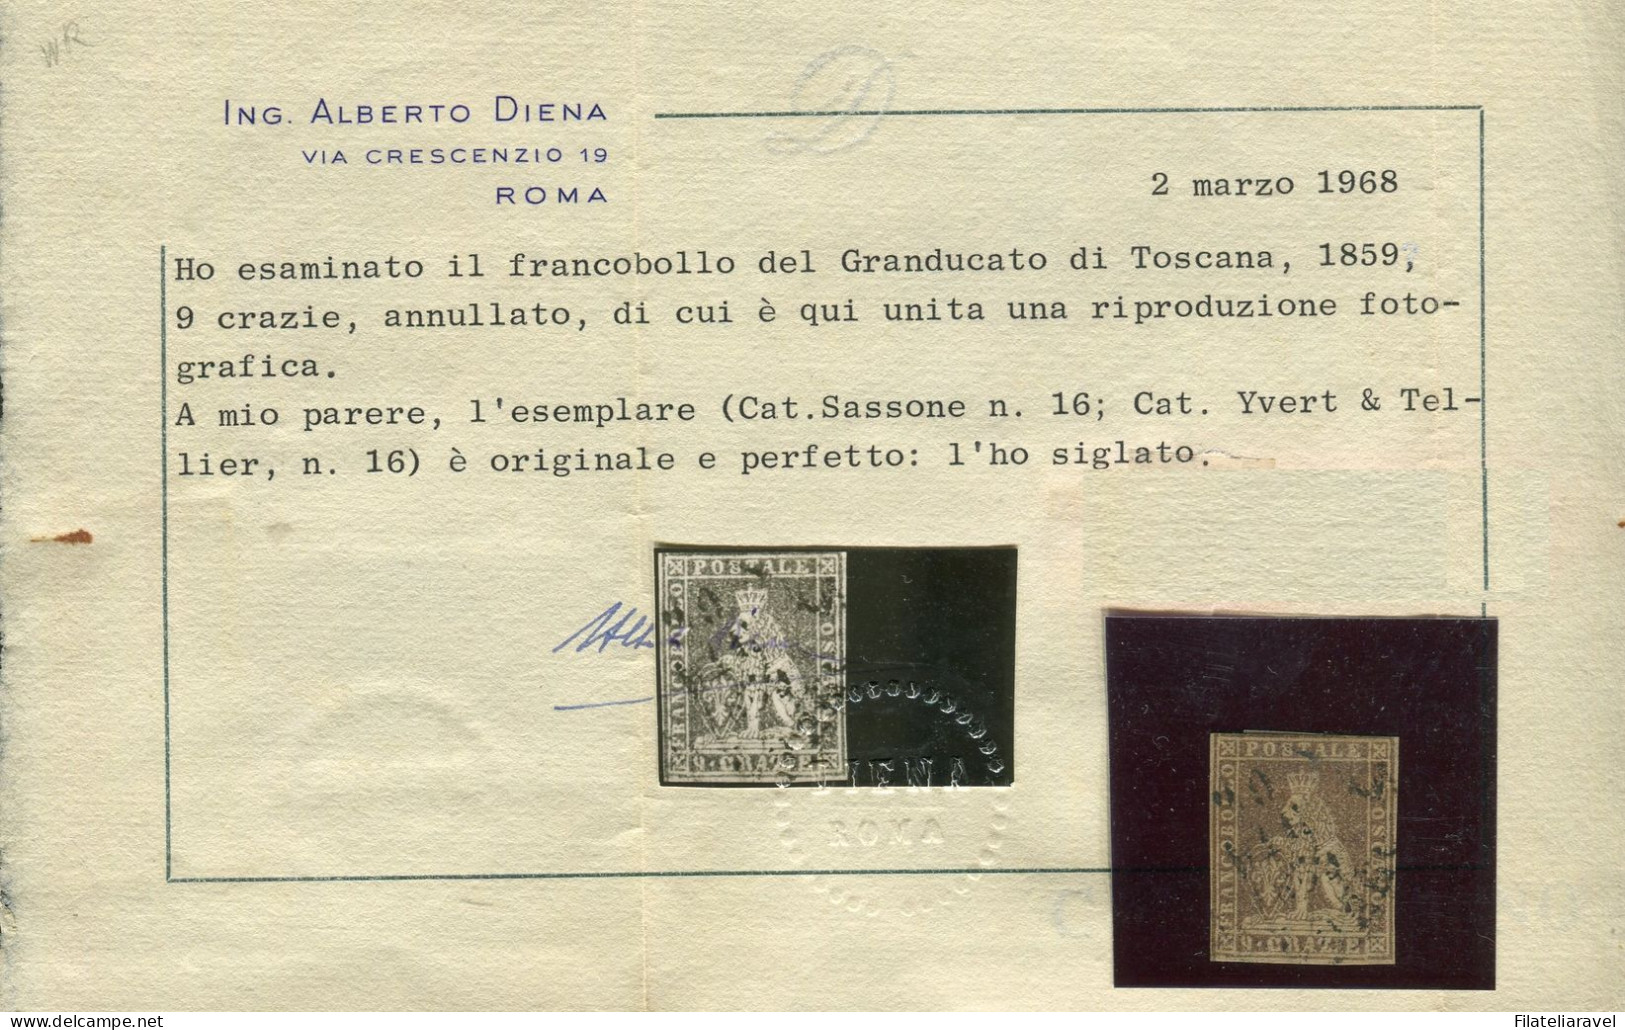 Us 1859 - "Governo Provvisorio" 9 Crazie Bruno Lillaceo (16) Cert. Alberto Diena ( 12.000) - Tuscany